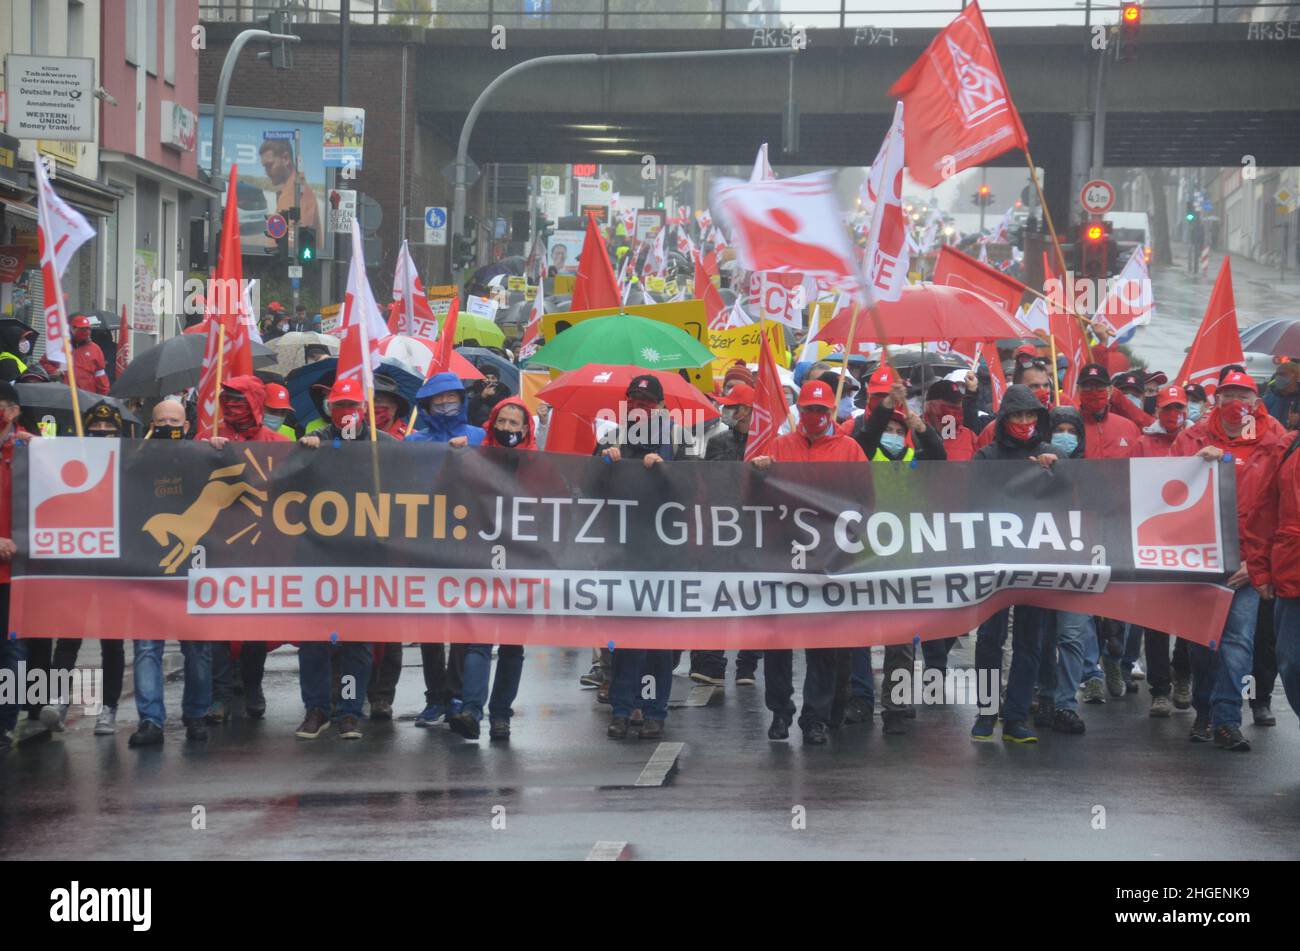 Aachen: 24.09.2020 — Tausende, die gegen die geplante Schließung des Continental-Reifenwerks demonstrieren Banque D'Images